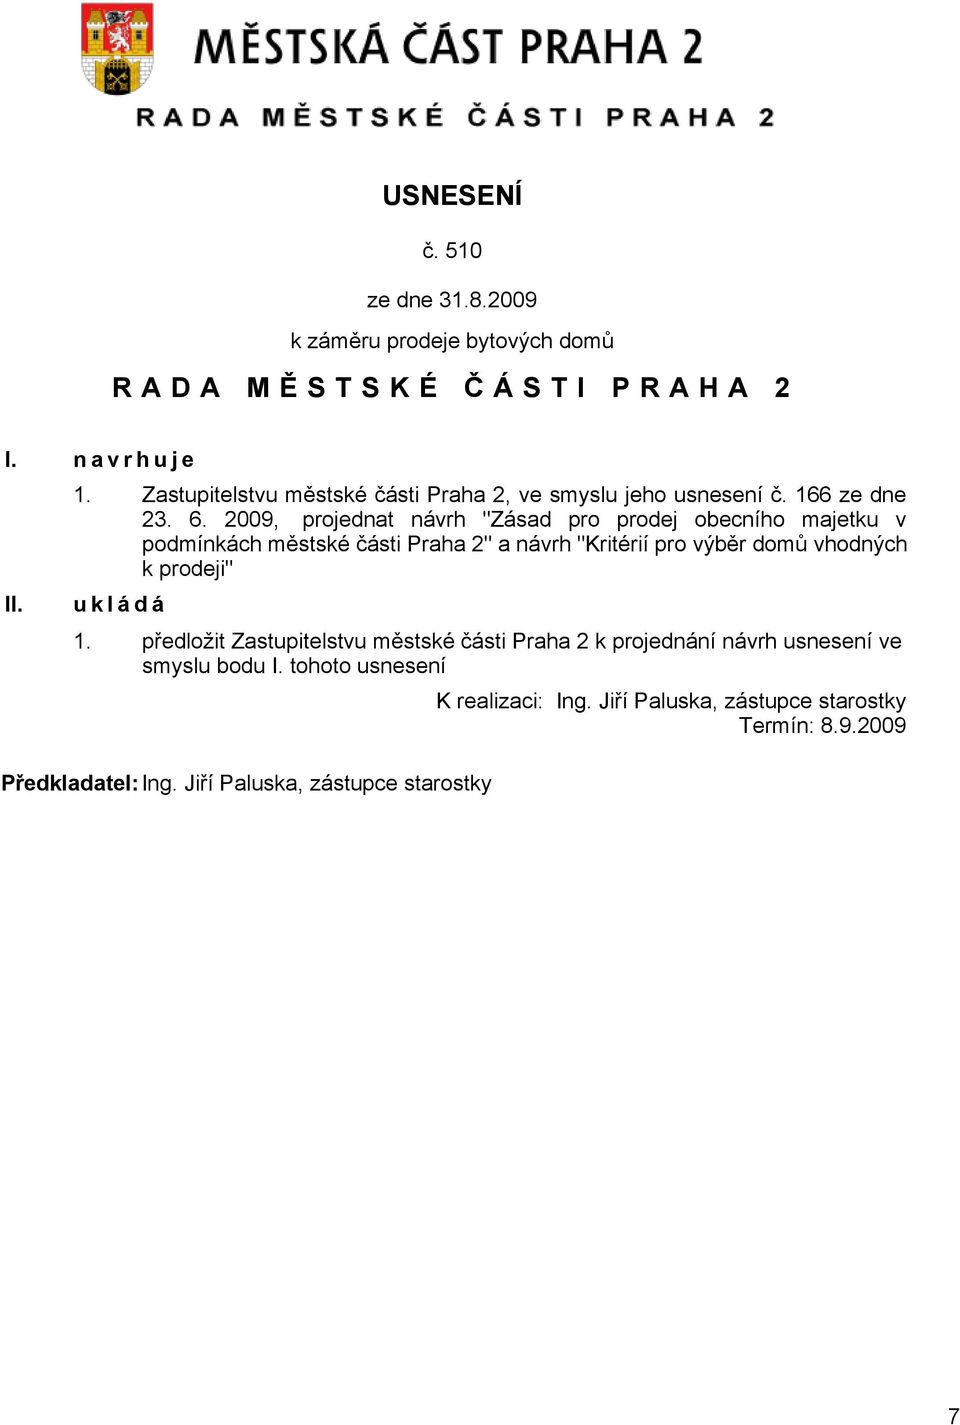 2009, projednat návrh "Zásad pro prodej obecního majetku v podmínkách městské části Praha 2" a návrh "Kritérií pro výběr domů vhodných k prodeji"